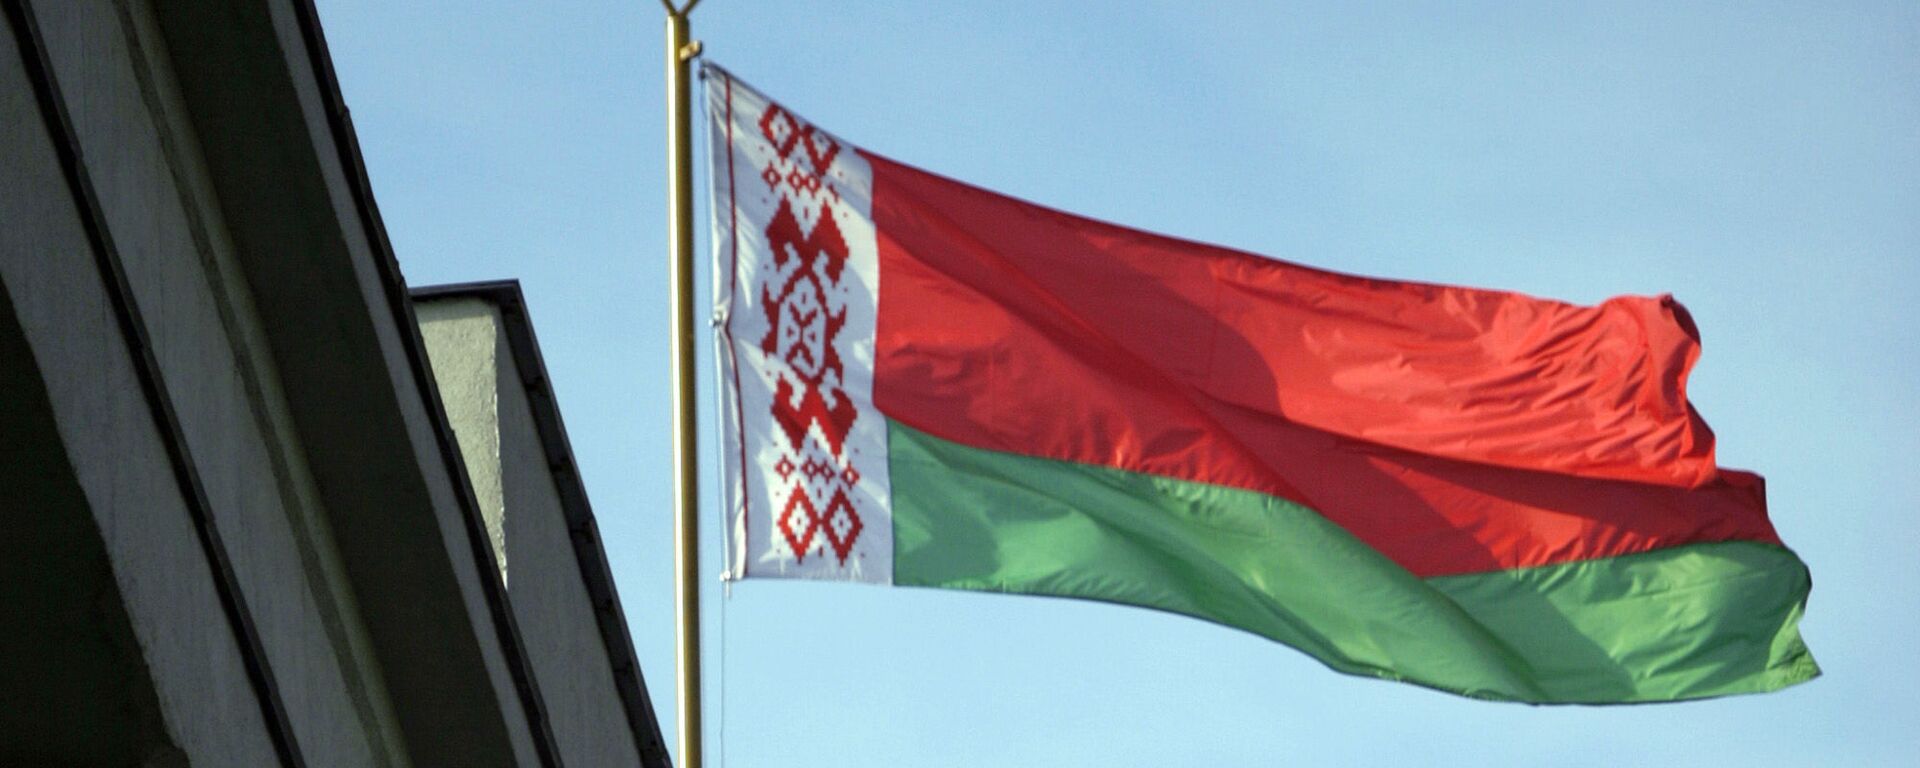 Государственный флаг Белоруссии - Sputnik Lietuva, 1920, 01.06.2021